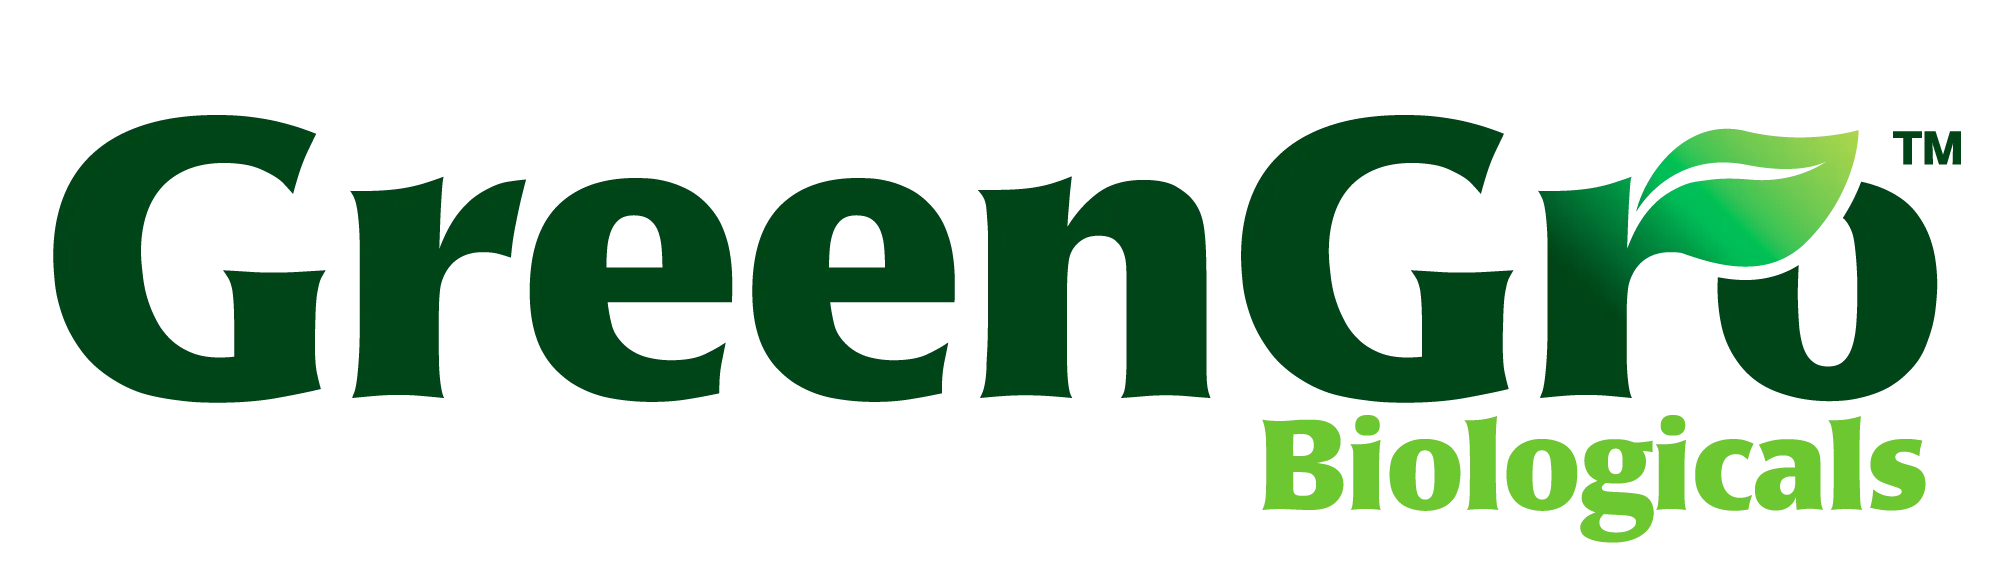 thegreengro.com